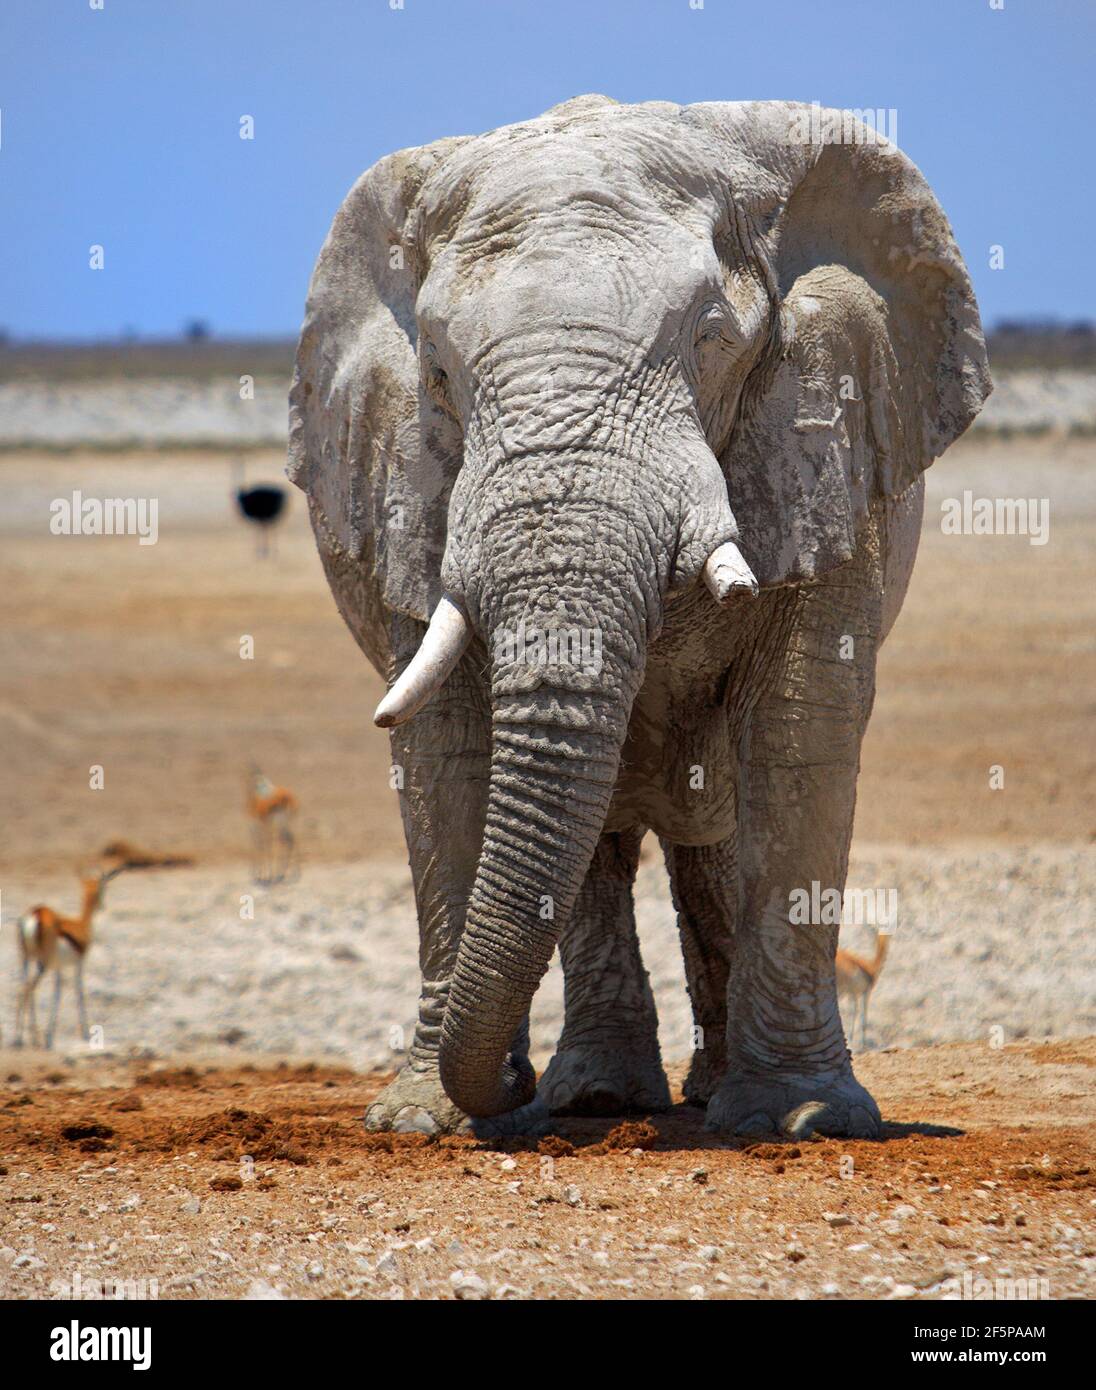 Enorme elefante africano in piedi sulla Etosha Pan rivolto verso la fotocamera con un cielo blu chiaro e sfondo desertico. Foto Stock